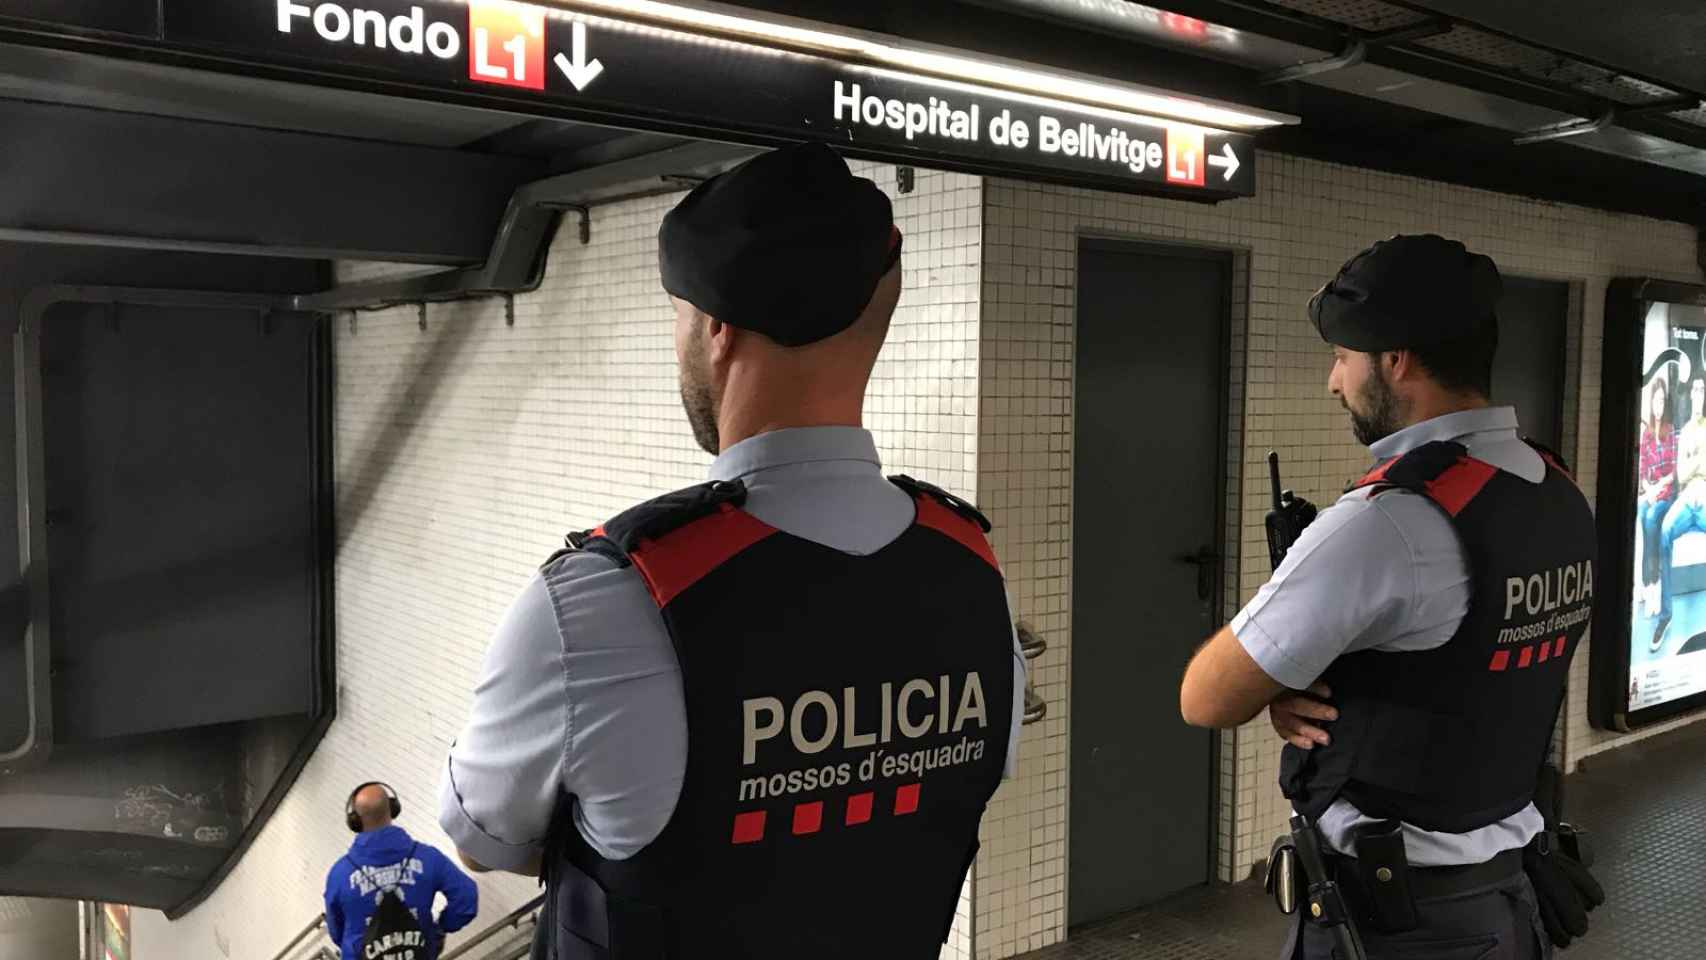 Dos mossos en la línea 1 del metro de Barcelona / MOSSOS D'ESQUADRA